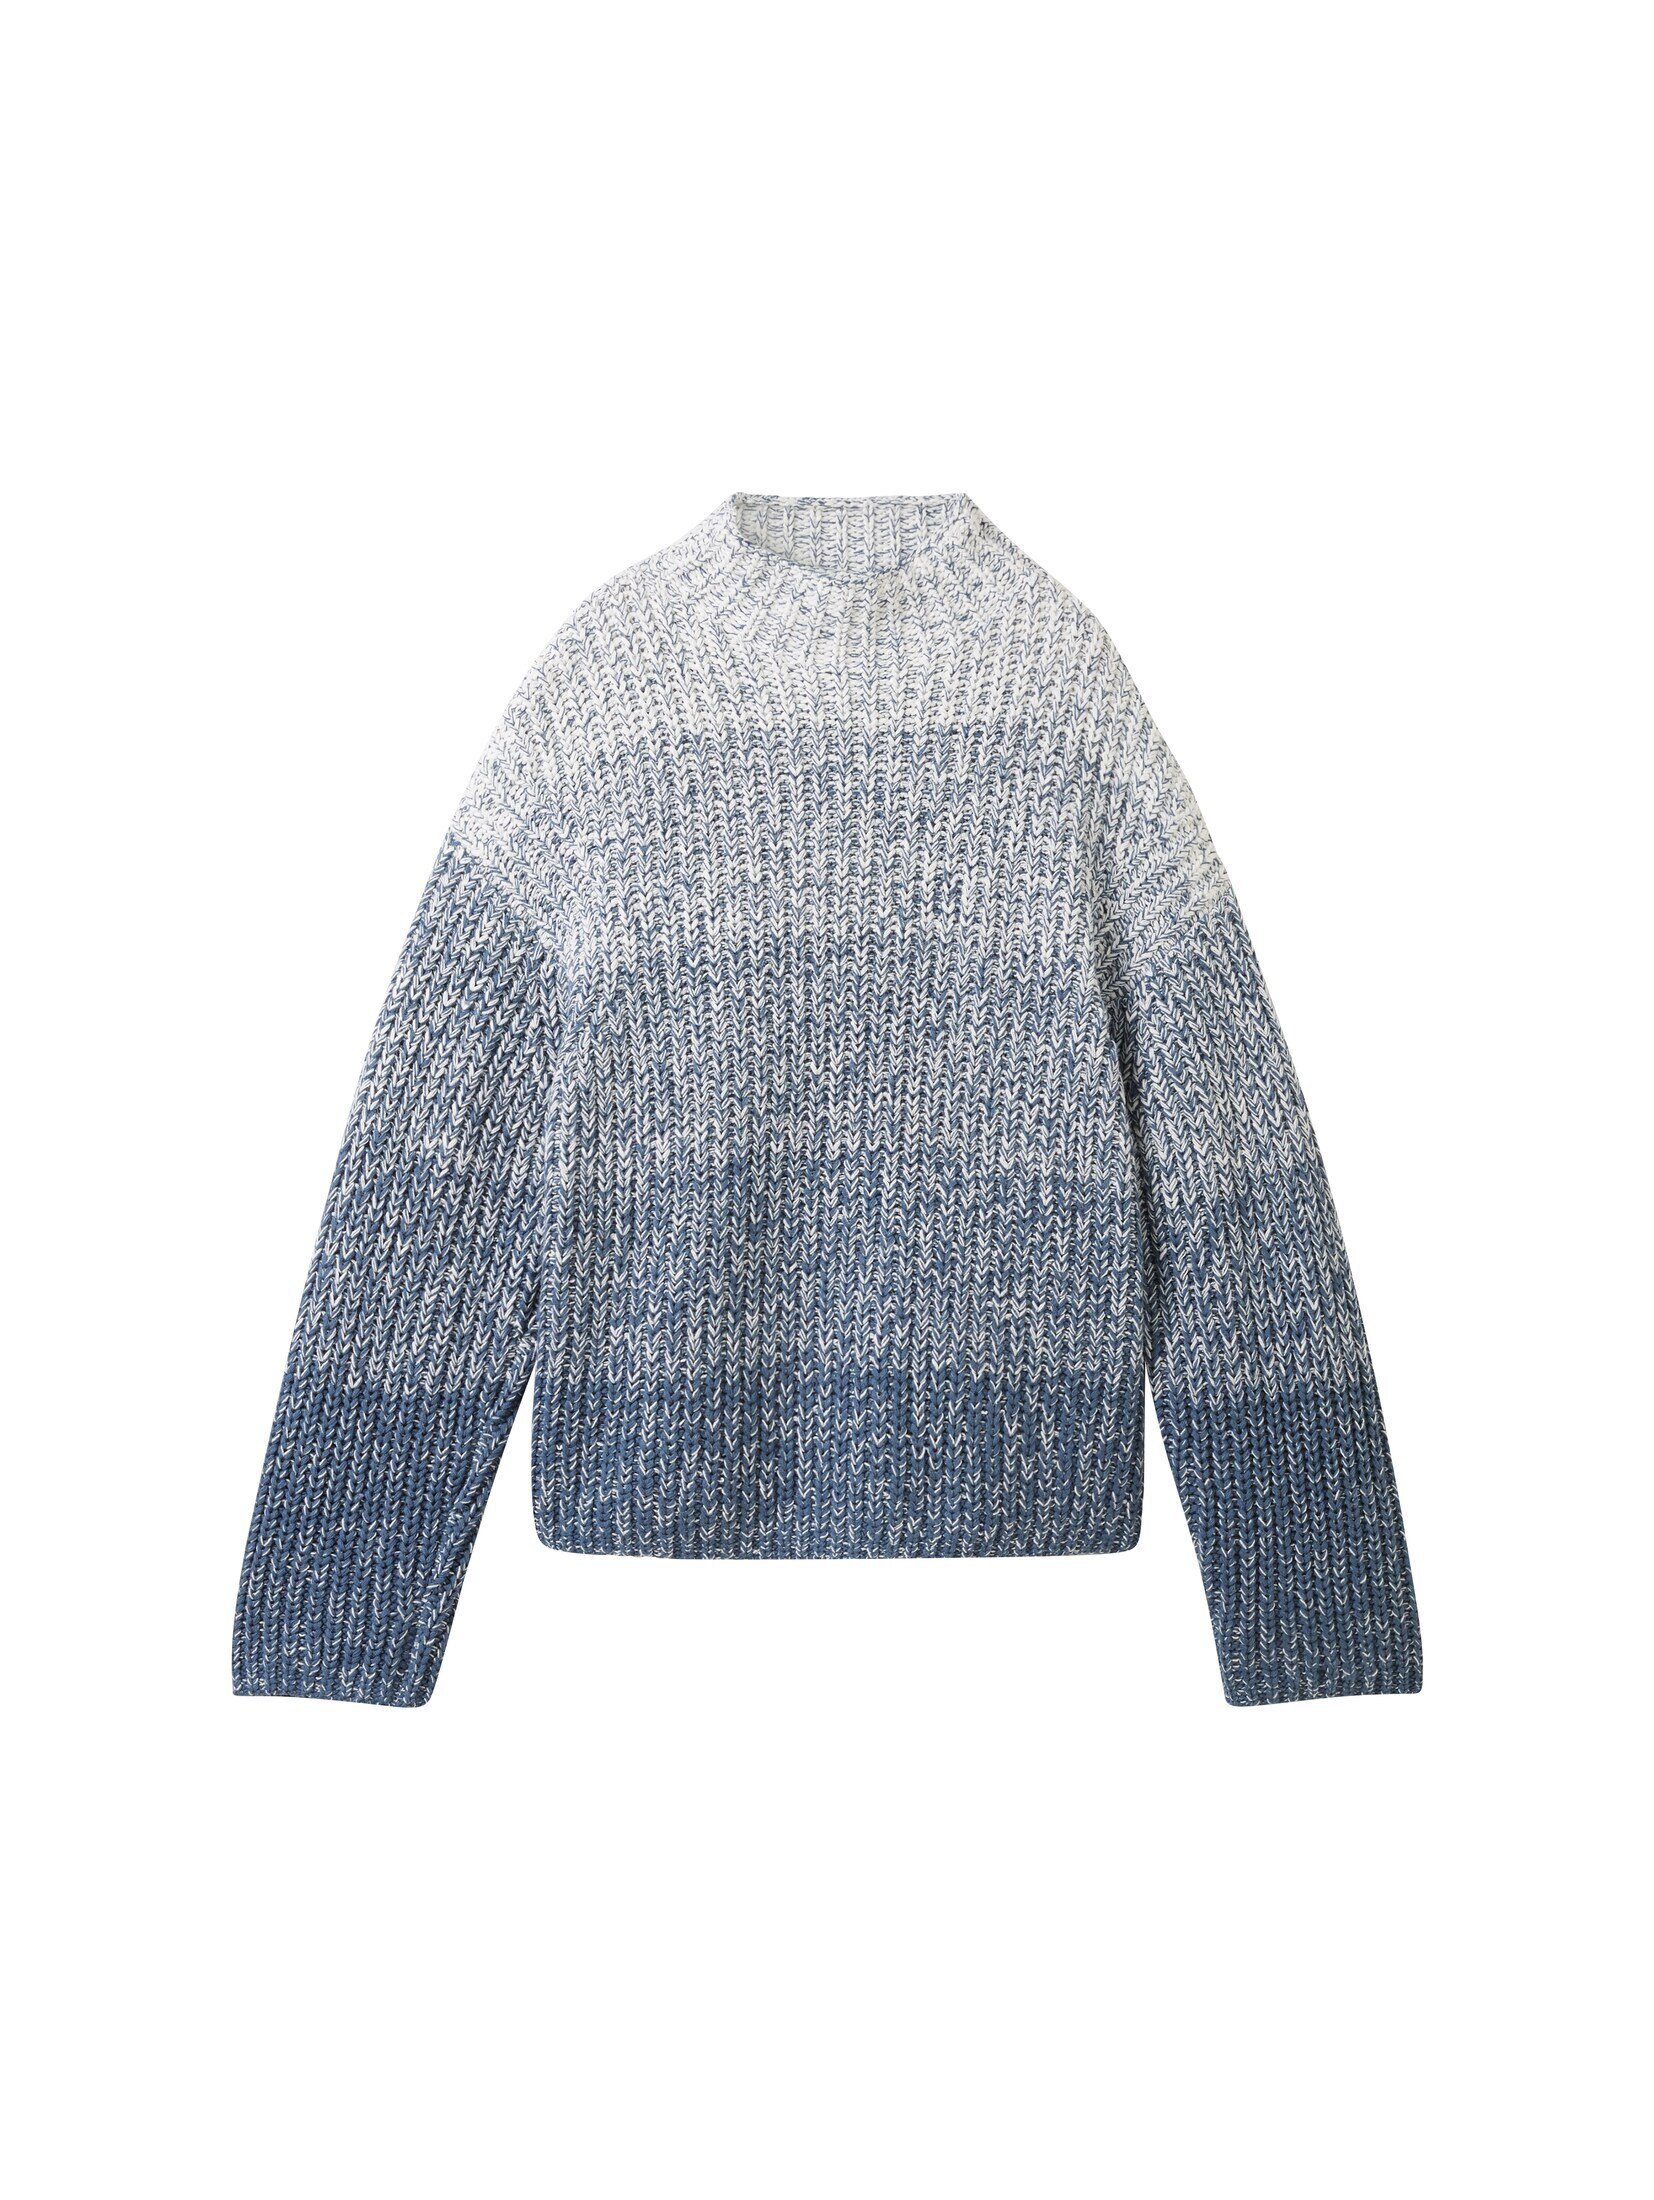 TOM TAILOR Strickpullover Strickpullover mit gradient Farbverlauf blue knitted